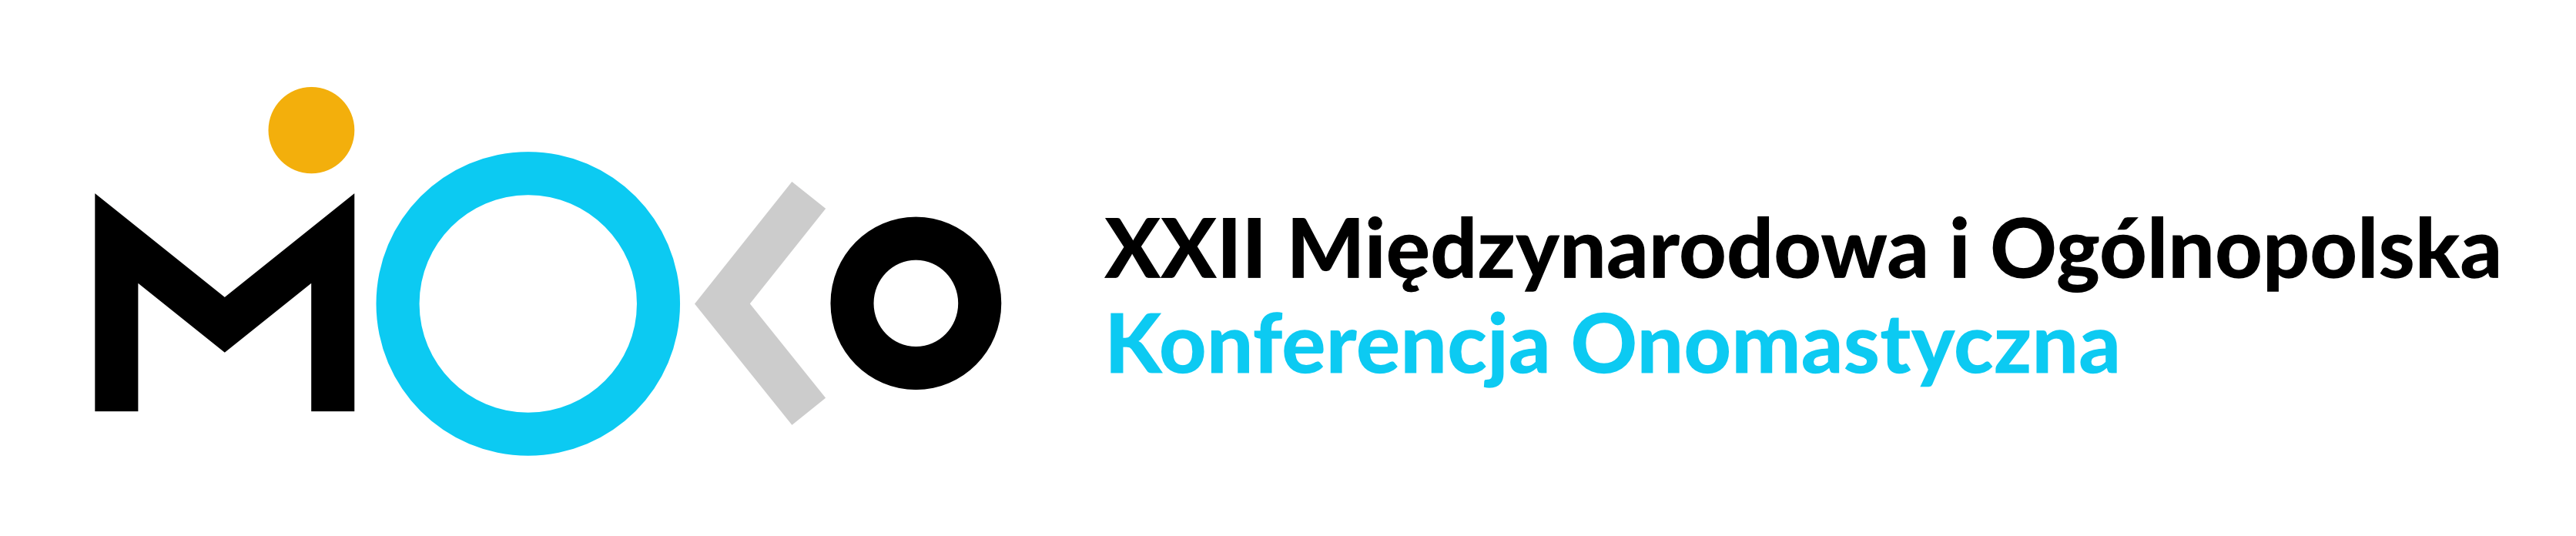 XXII Międzynarodowa i Ogólnopolska Konferencja Onomastyczna